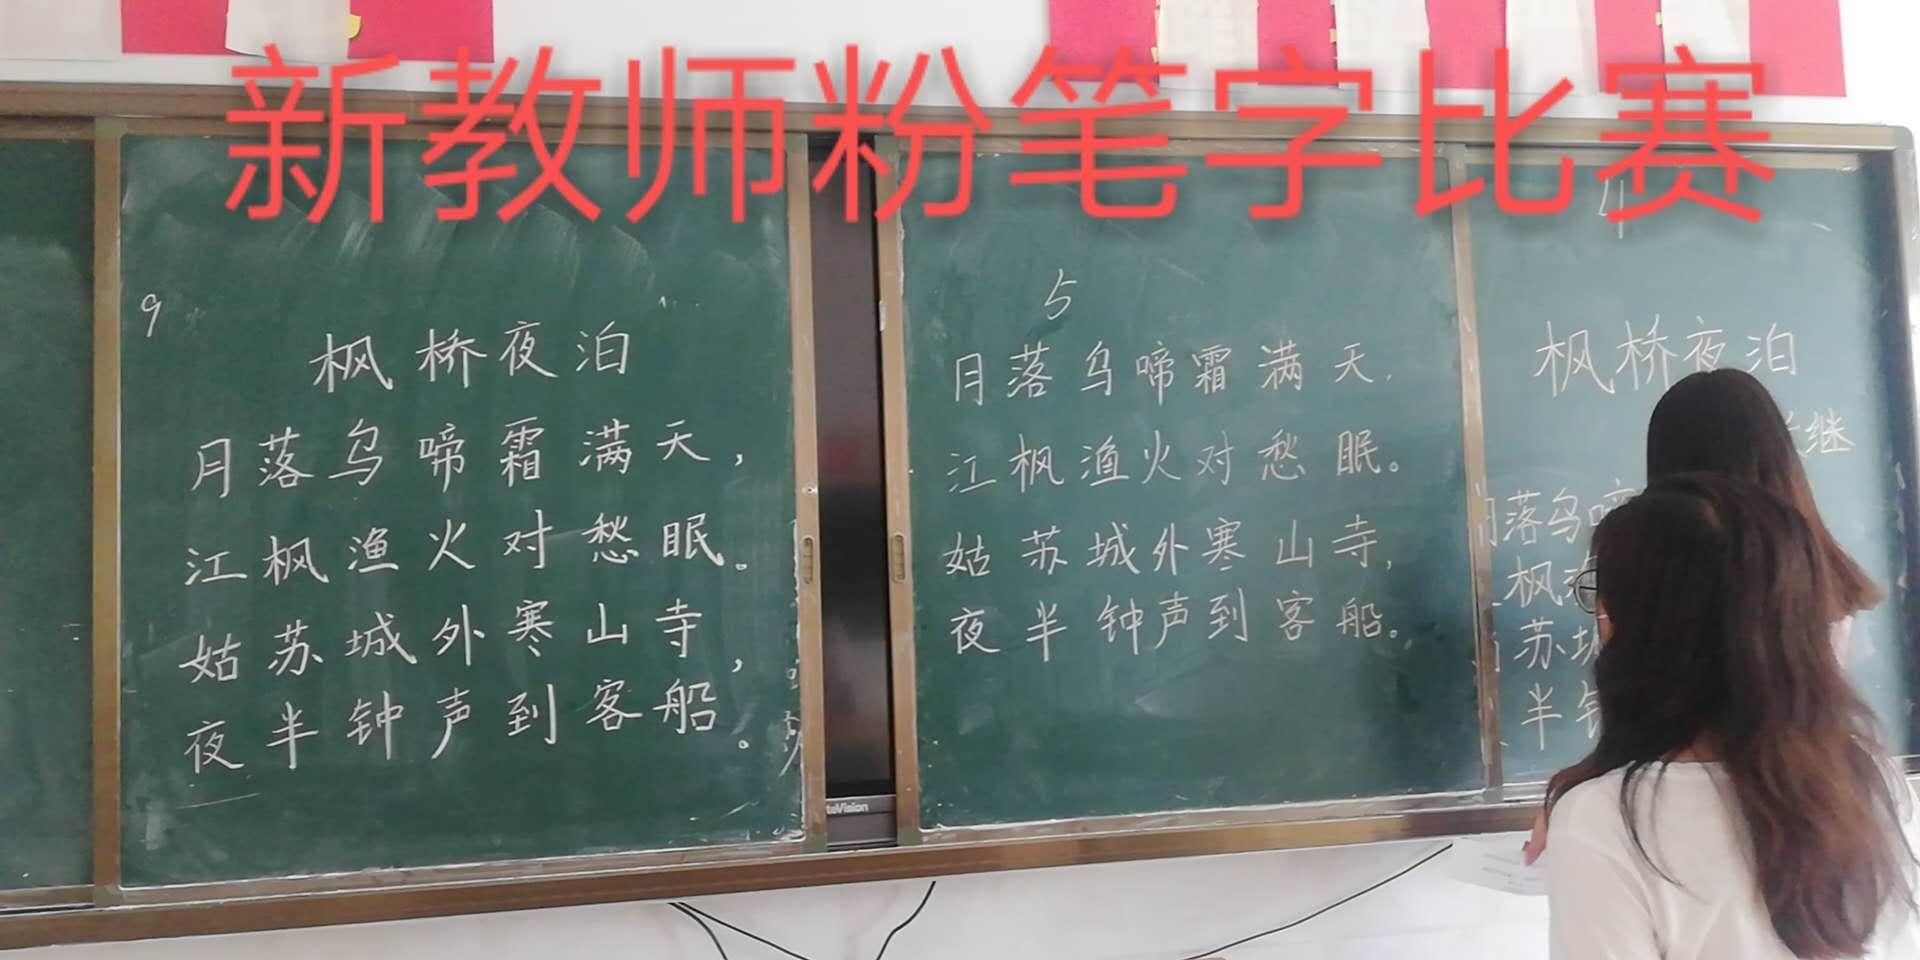 新沂市第三中学2019年新岗教师粉笔字比赛